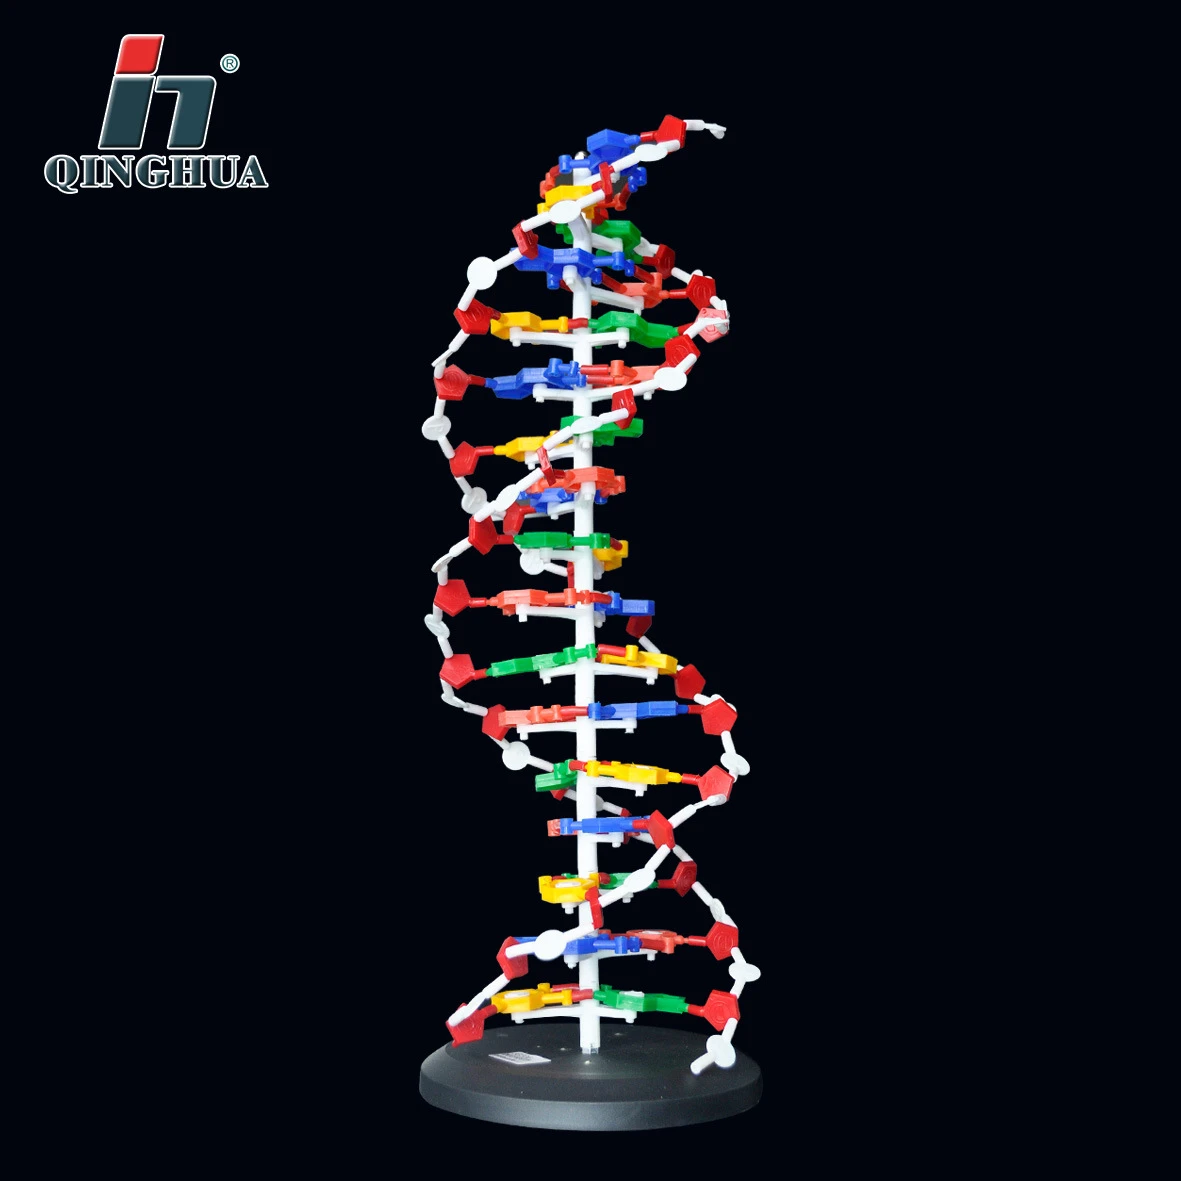 Base de modelo de estructura de ADN de 60cm, par de modelos de doble hélice  de ADN génico, suministros de equipo educativo para enseñanza de  Biología|Equipamiento educativo| - AliExpress